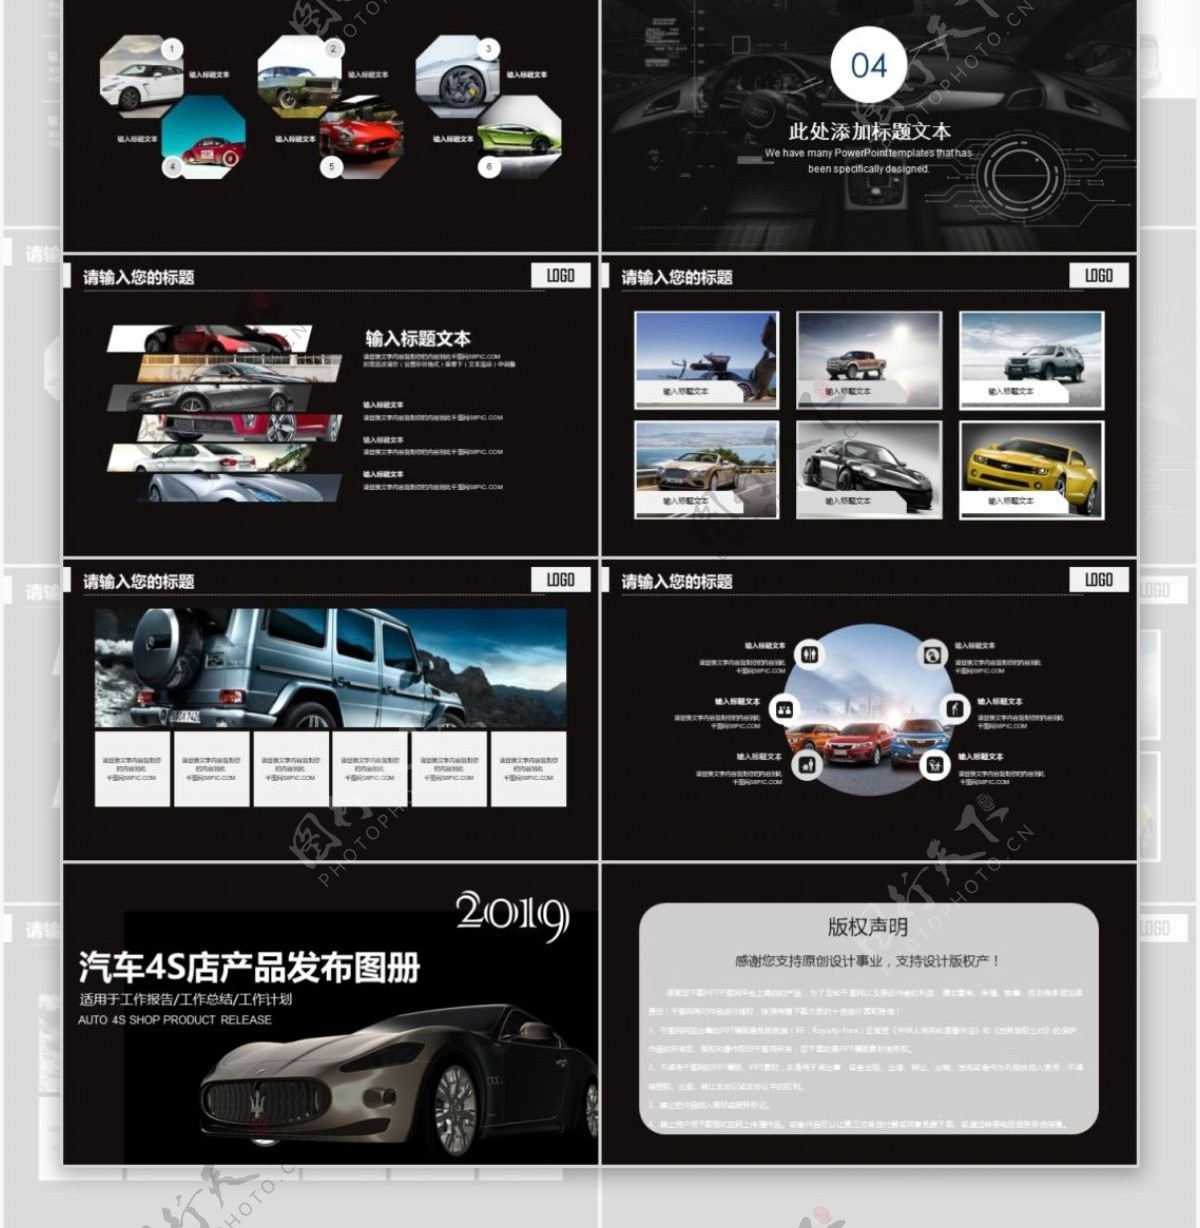 汽车品牌宣传4S店营销策划方案ppt模板免费下载